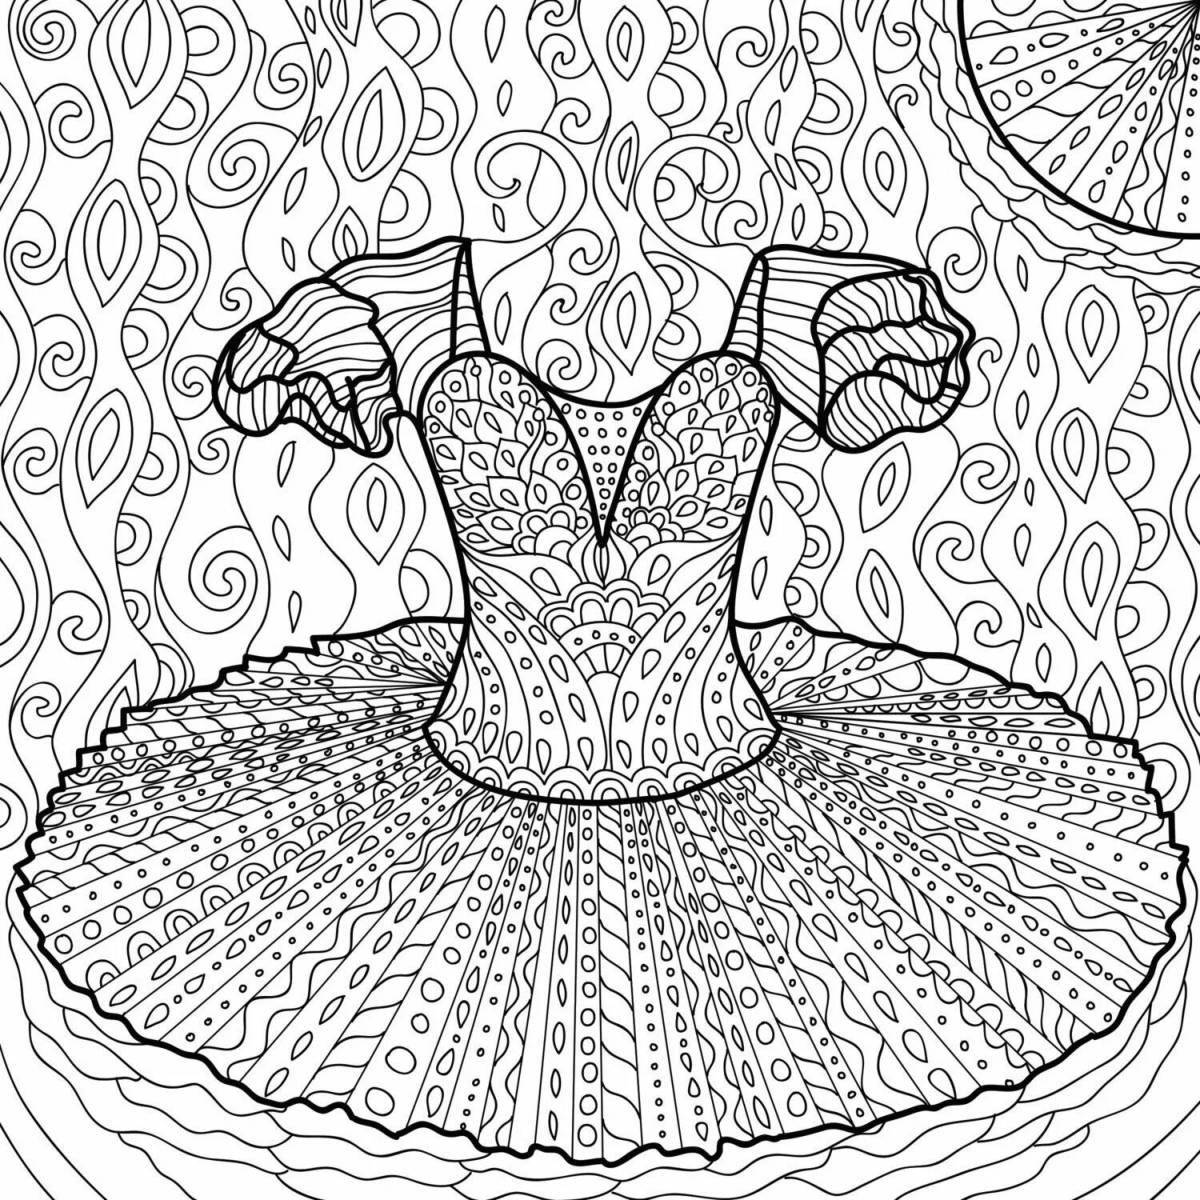 Vivacious coloring page антистресс балерина